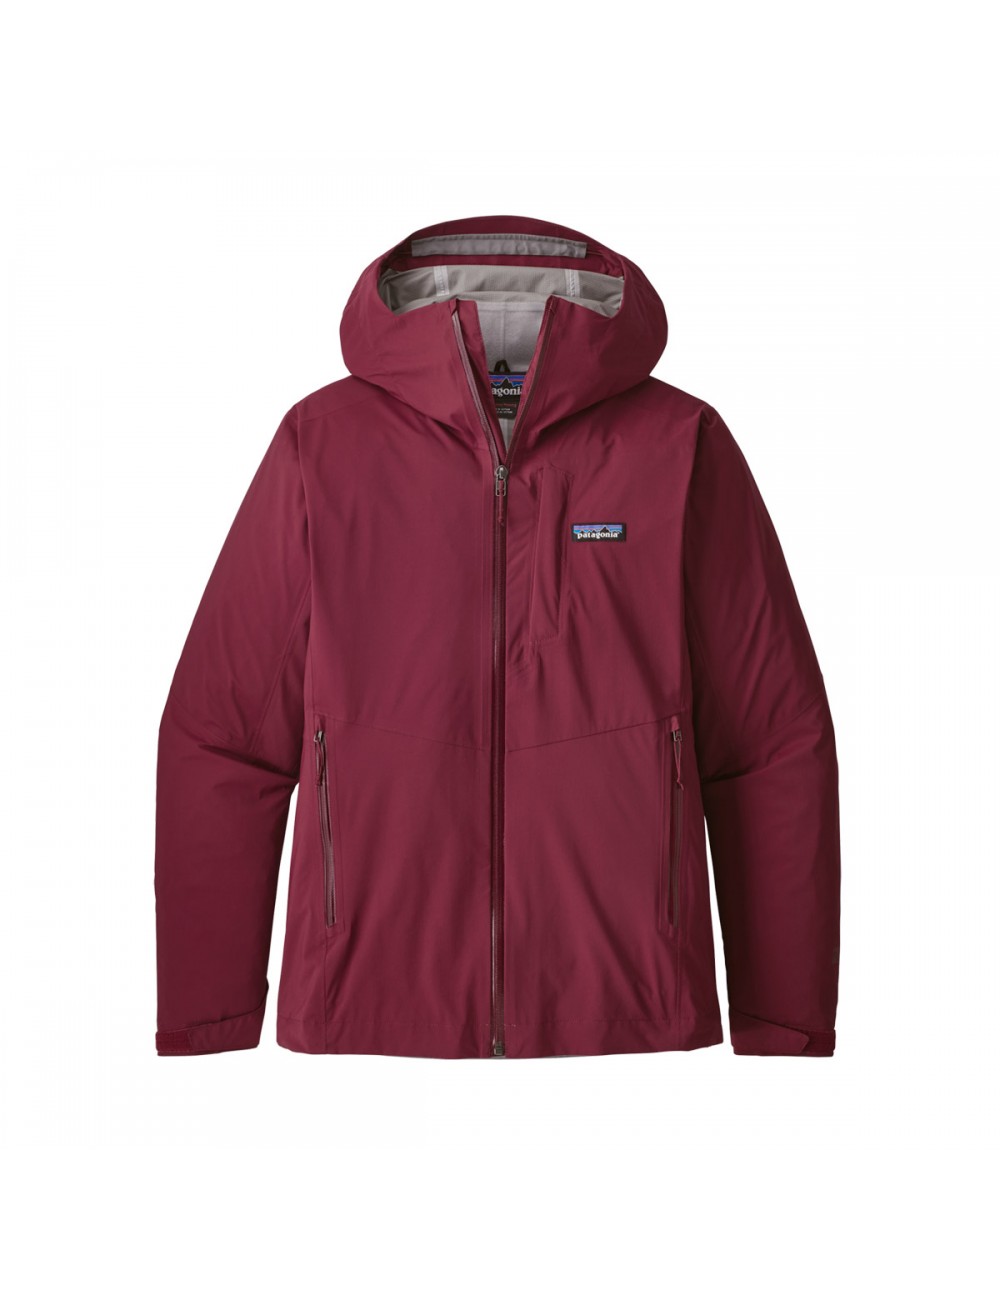 Patagonia Stretch Rainshadow Jacket - Red